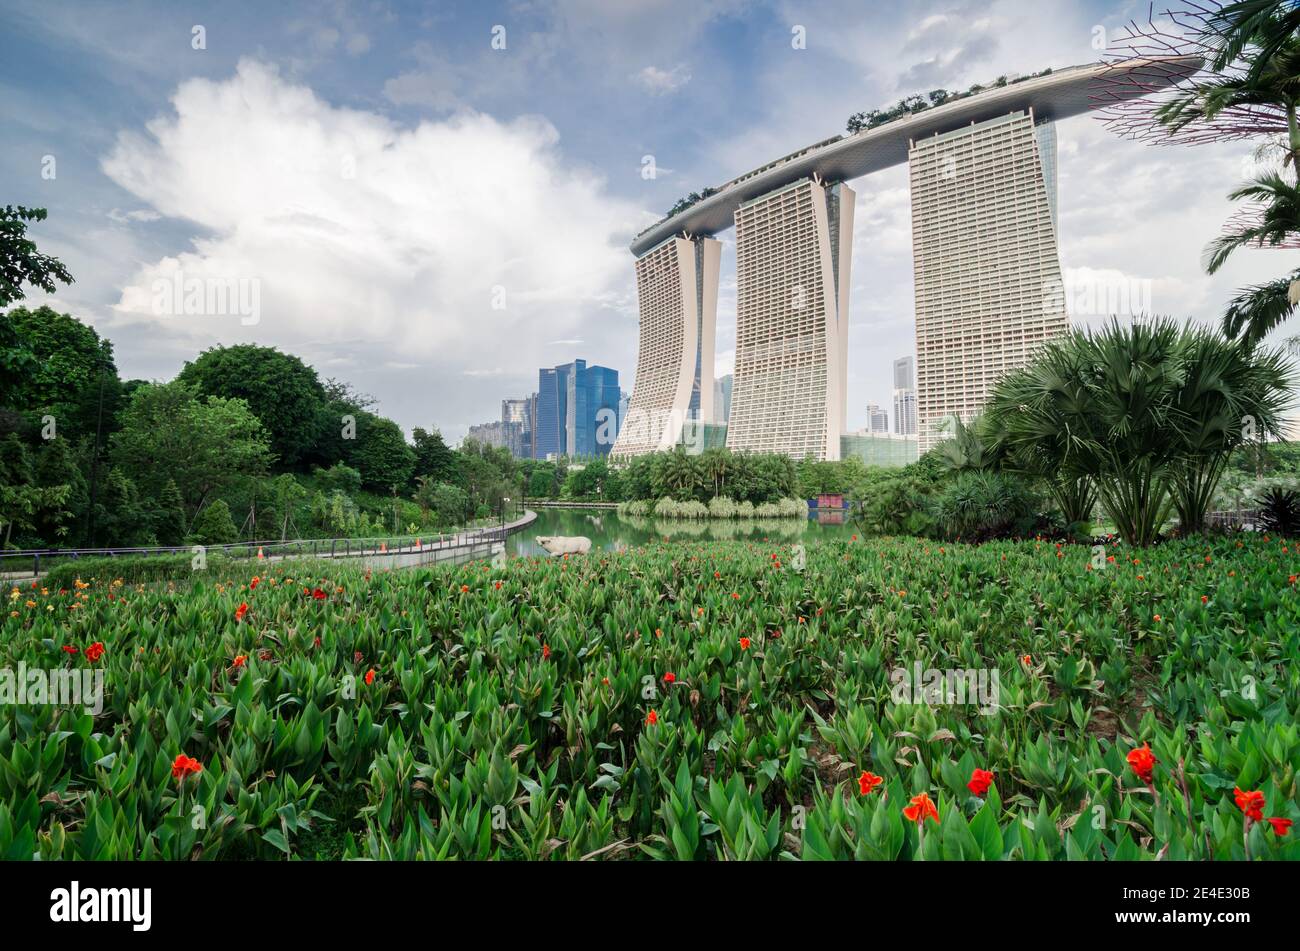 Le majestueux Marina Bay Sands Hotel and Casino avec vue depuis le jardin près de la baie. Célèbre attraction touristique de Singapour. Banque D'Images